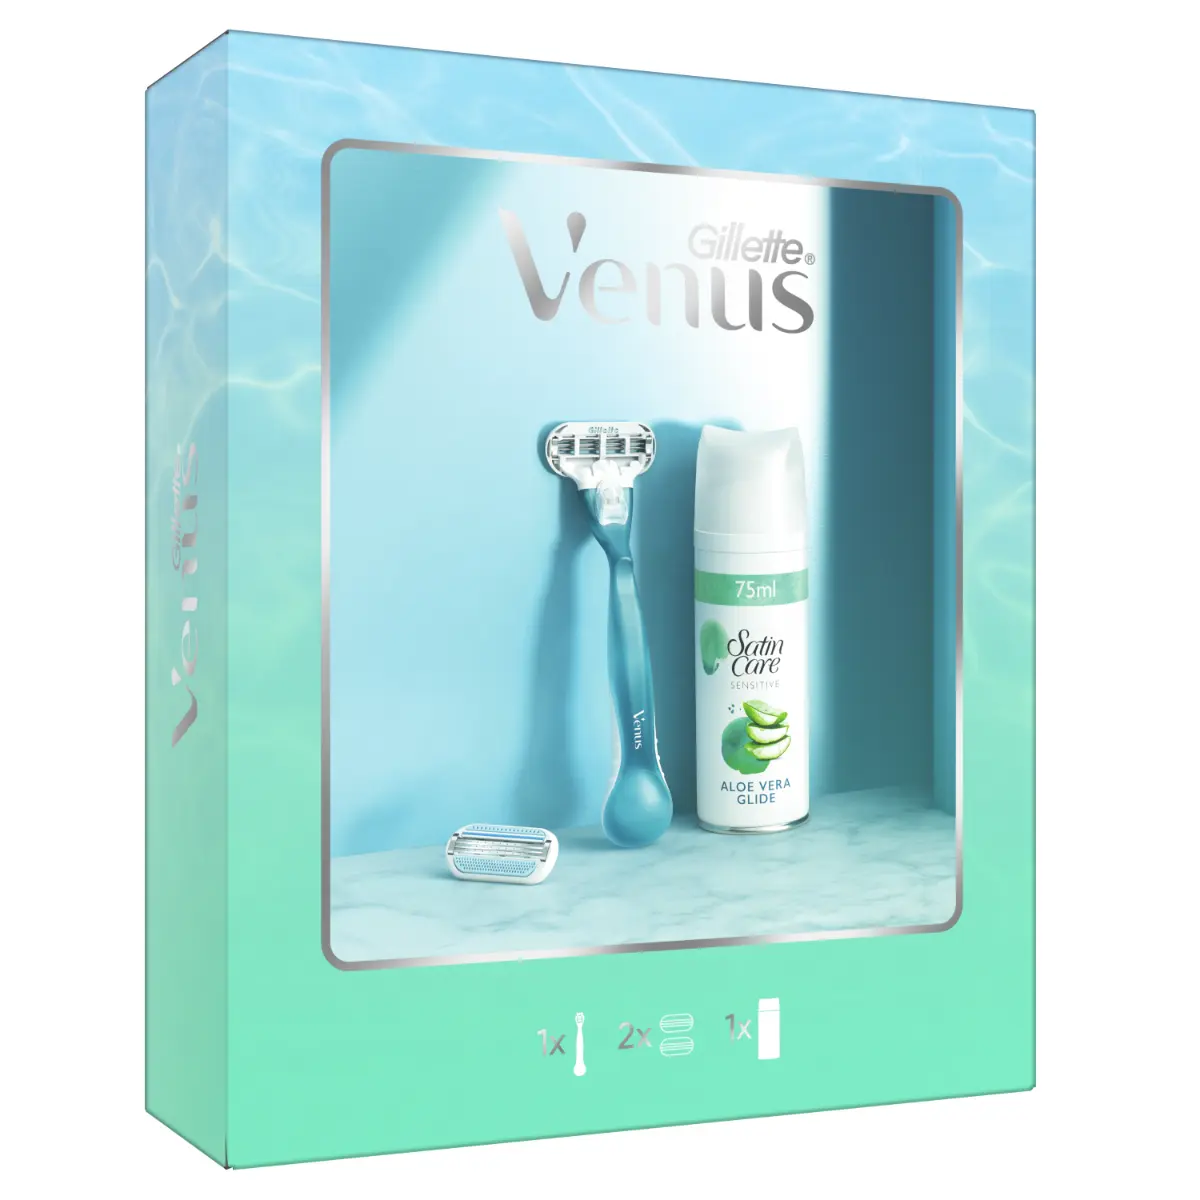 Set Cadou Venus Smooth: Aparat de ras pentru femei + 1 Lama de rezerva + Gel de ras Satin Care Sensitive Aloe Vera Glide, 75 ml